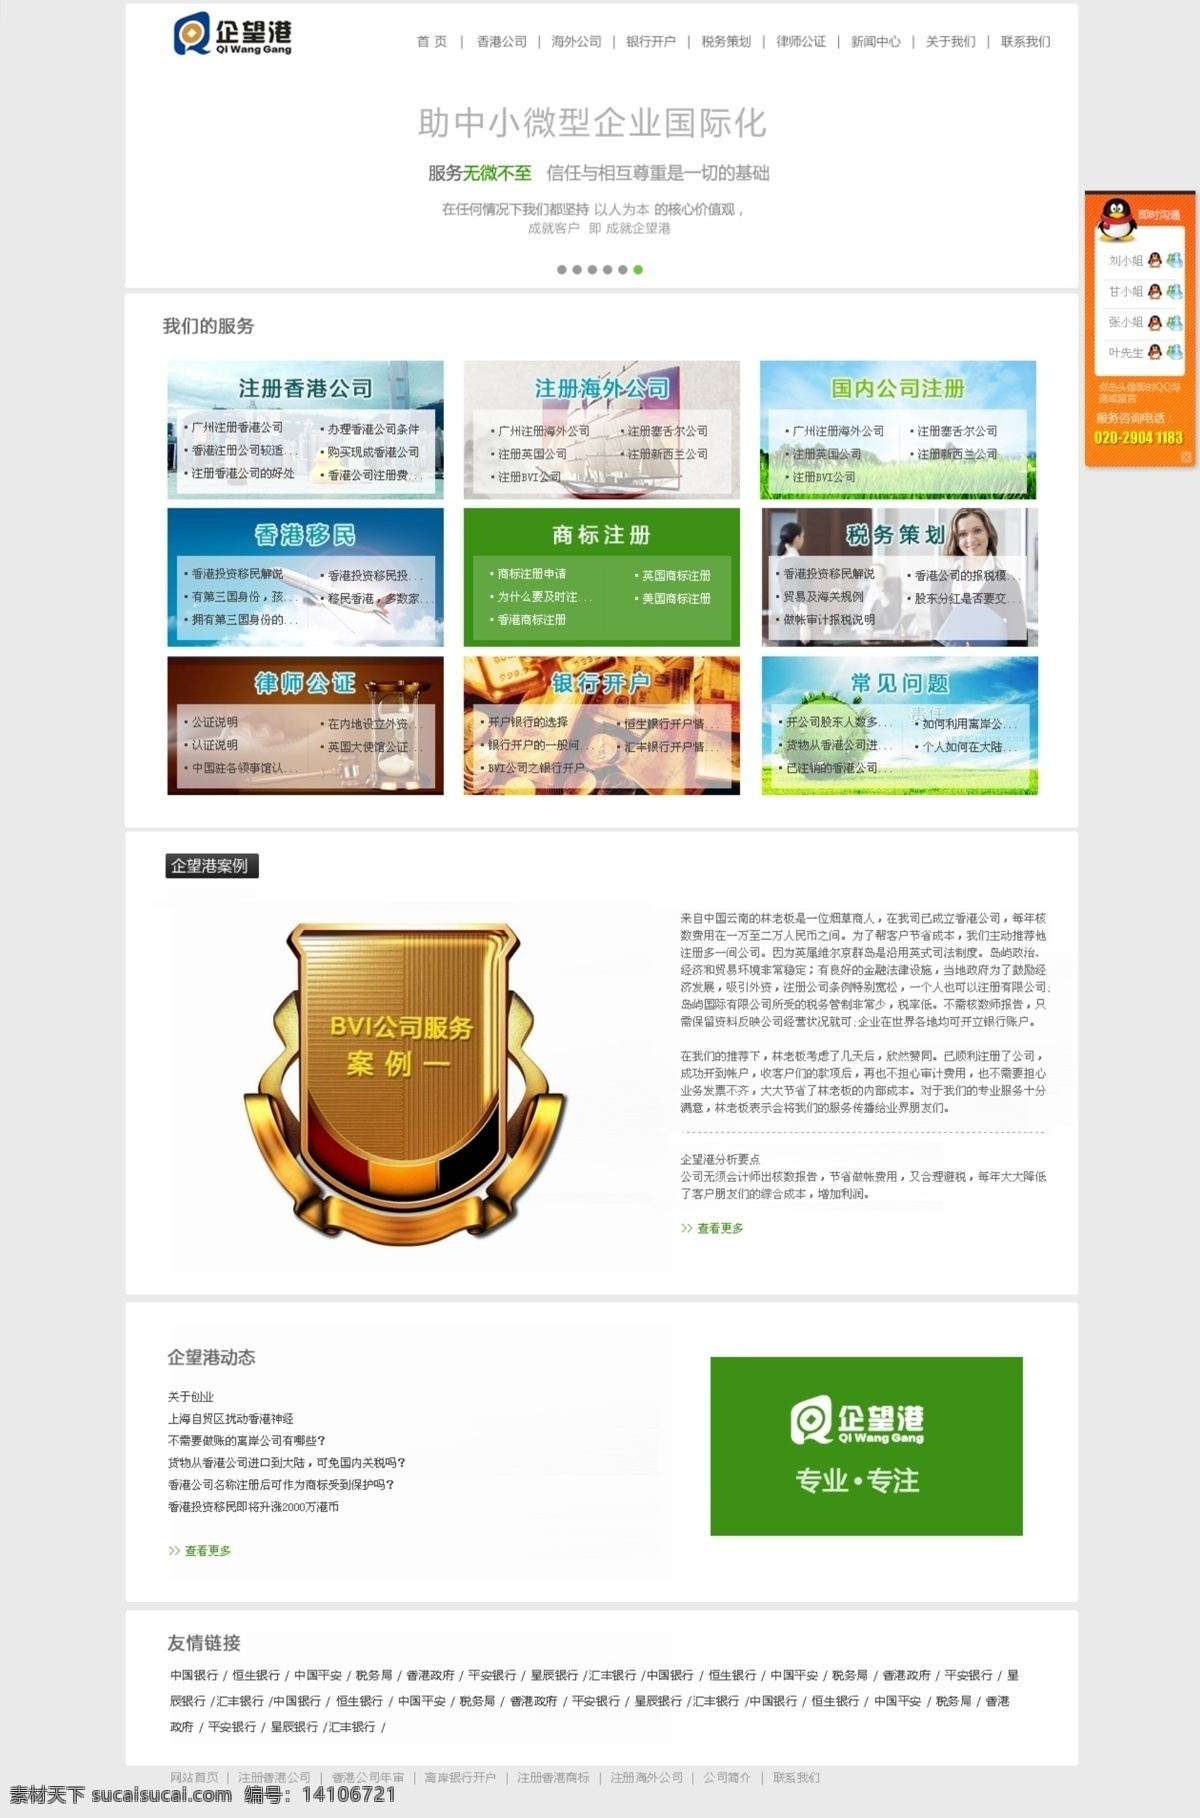 企业网站 网页模板 网站首页 网站页面 源文件 中文模板 外 注册公司 海外 模板下载 首页 海外注册 香港注册 网页素材